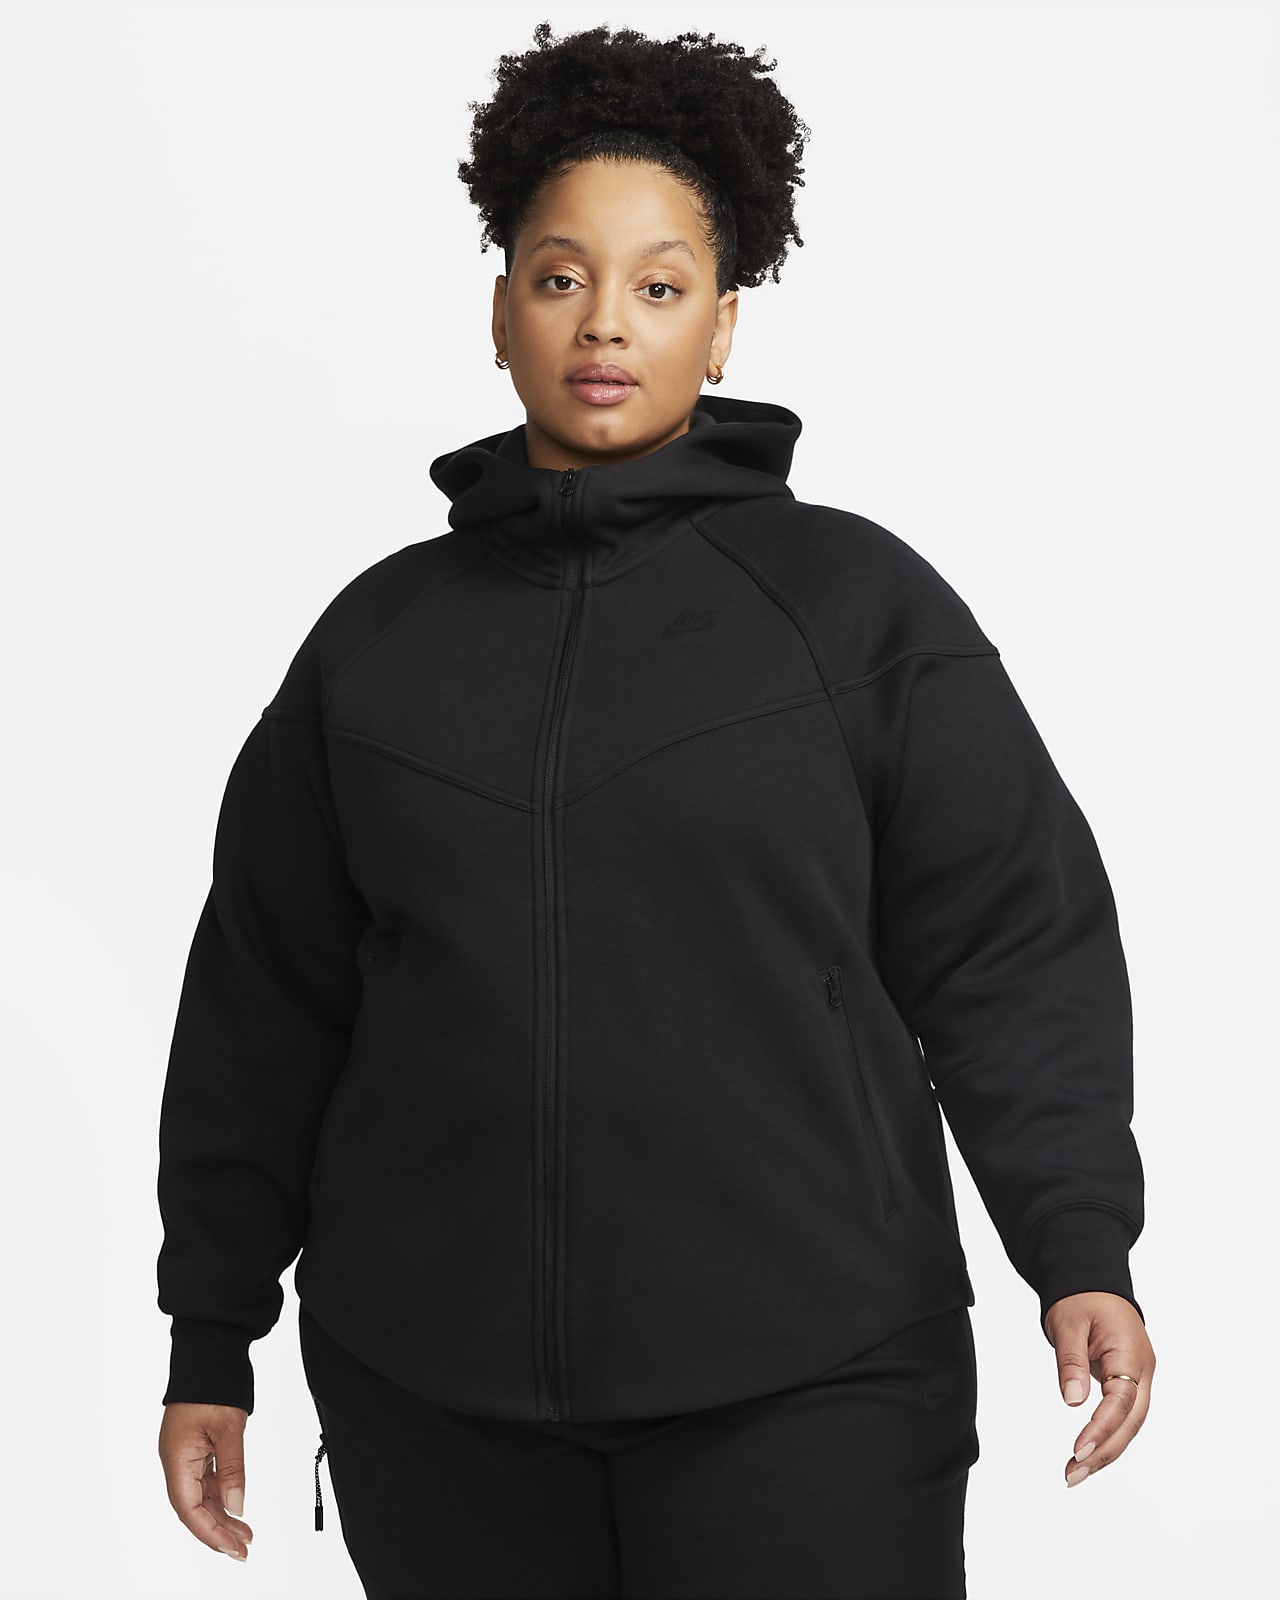 Damska bluza z kapturem i zamkiem na całej długości Nike Sportswear Tech Fleece Windrunner (duże rozmiary)